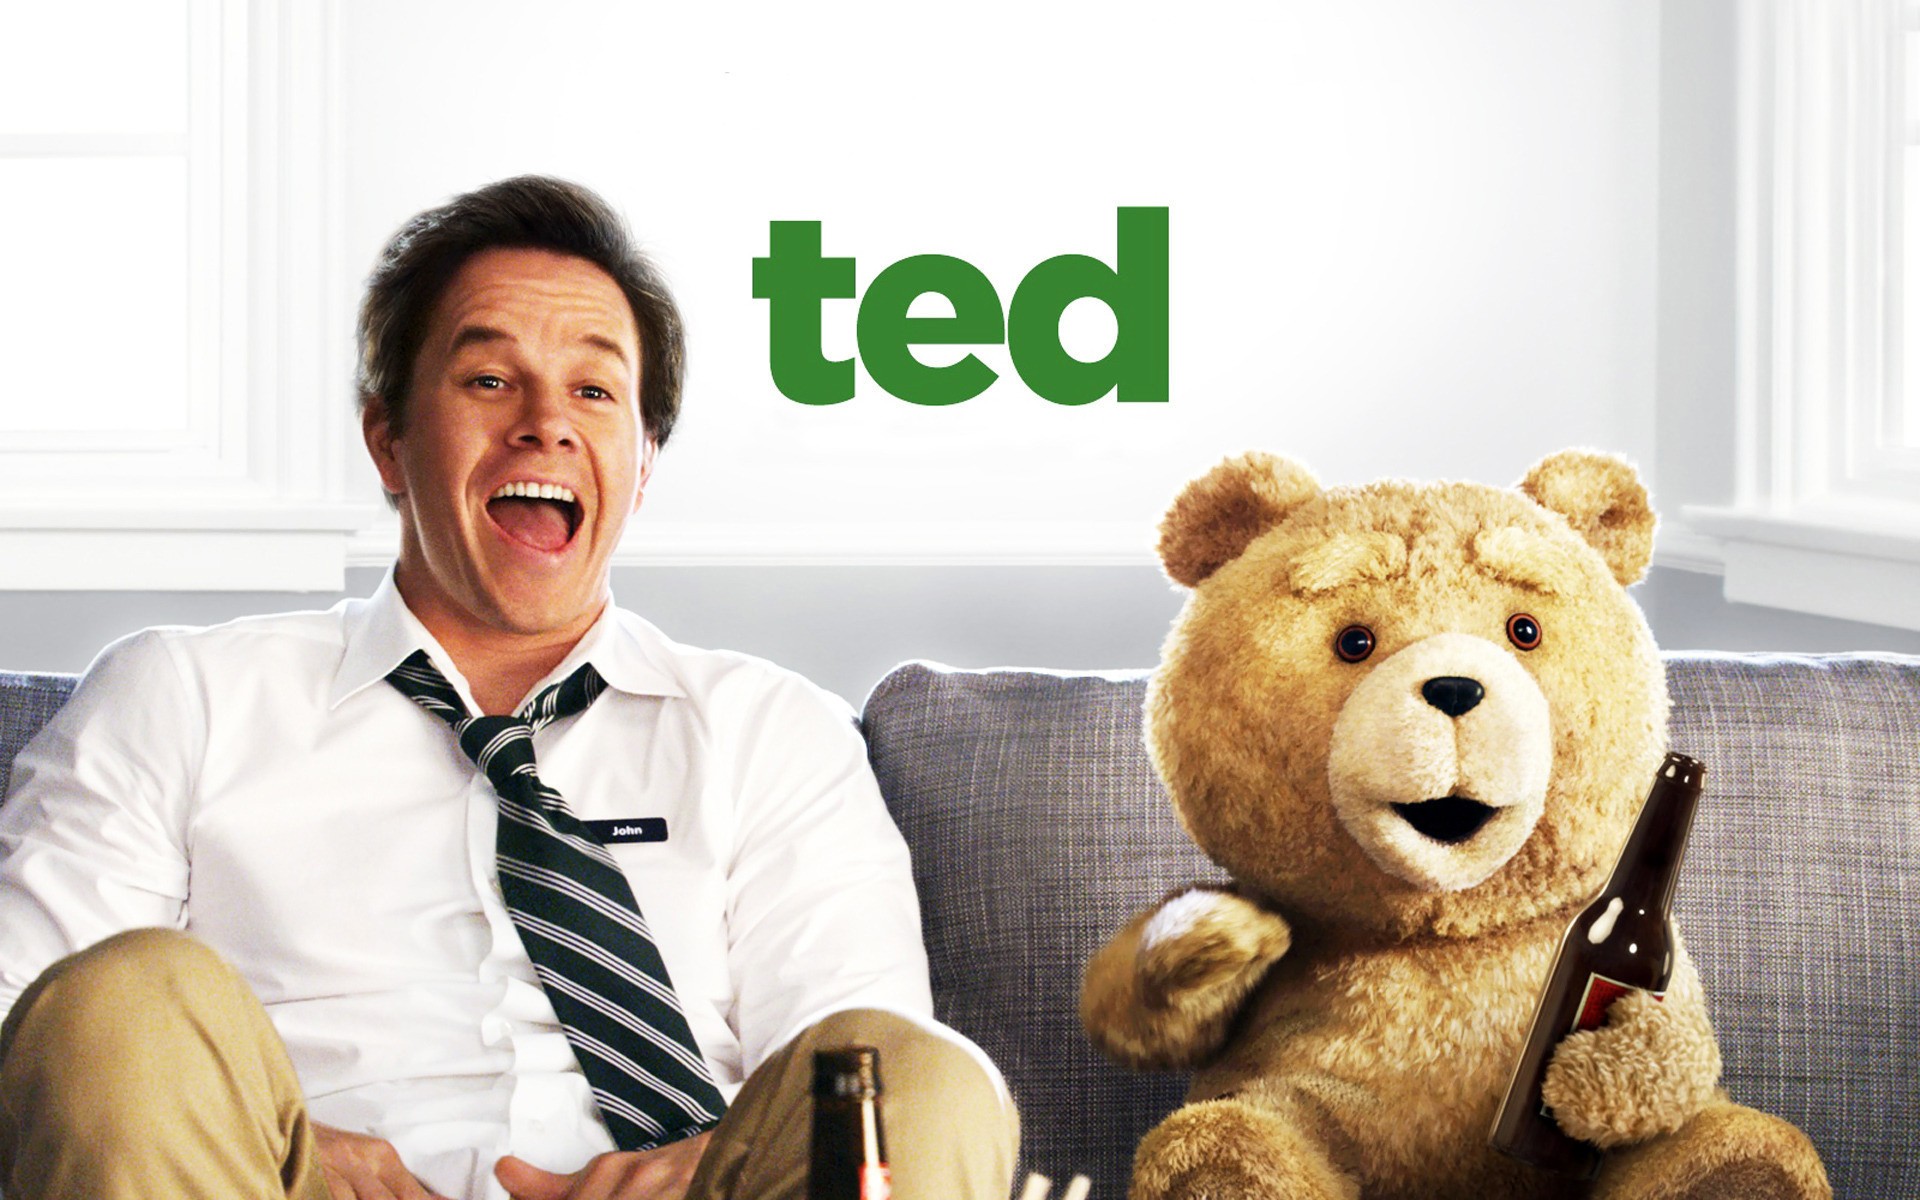 Третий лишний тэд. Третий лишний медведь Тед.